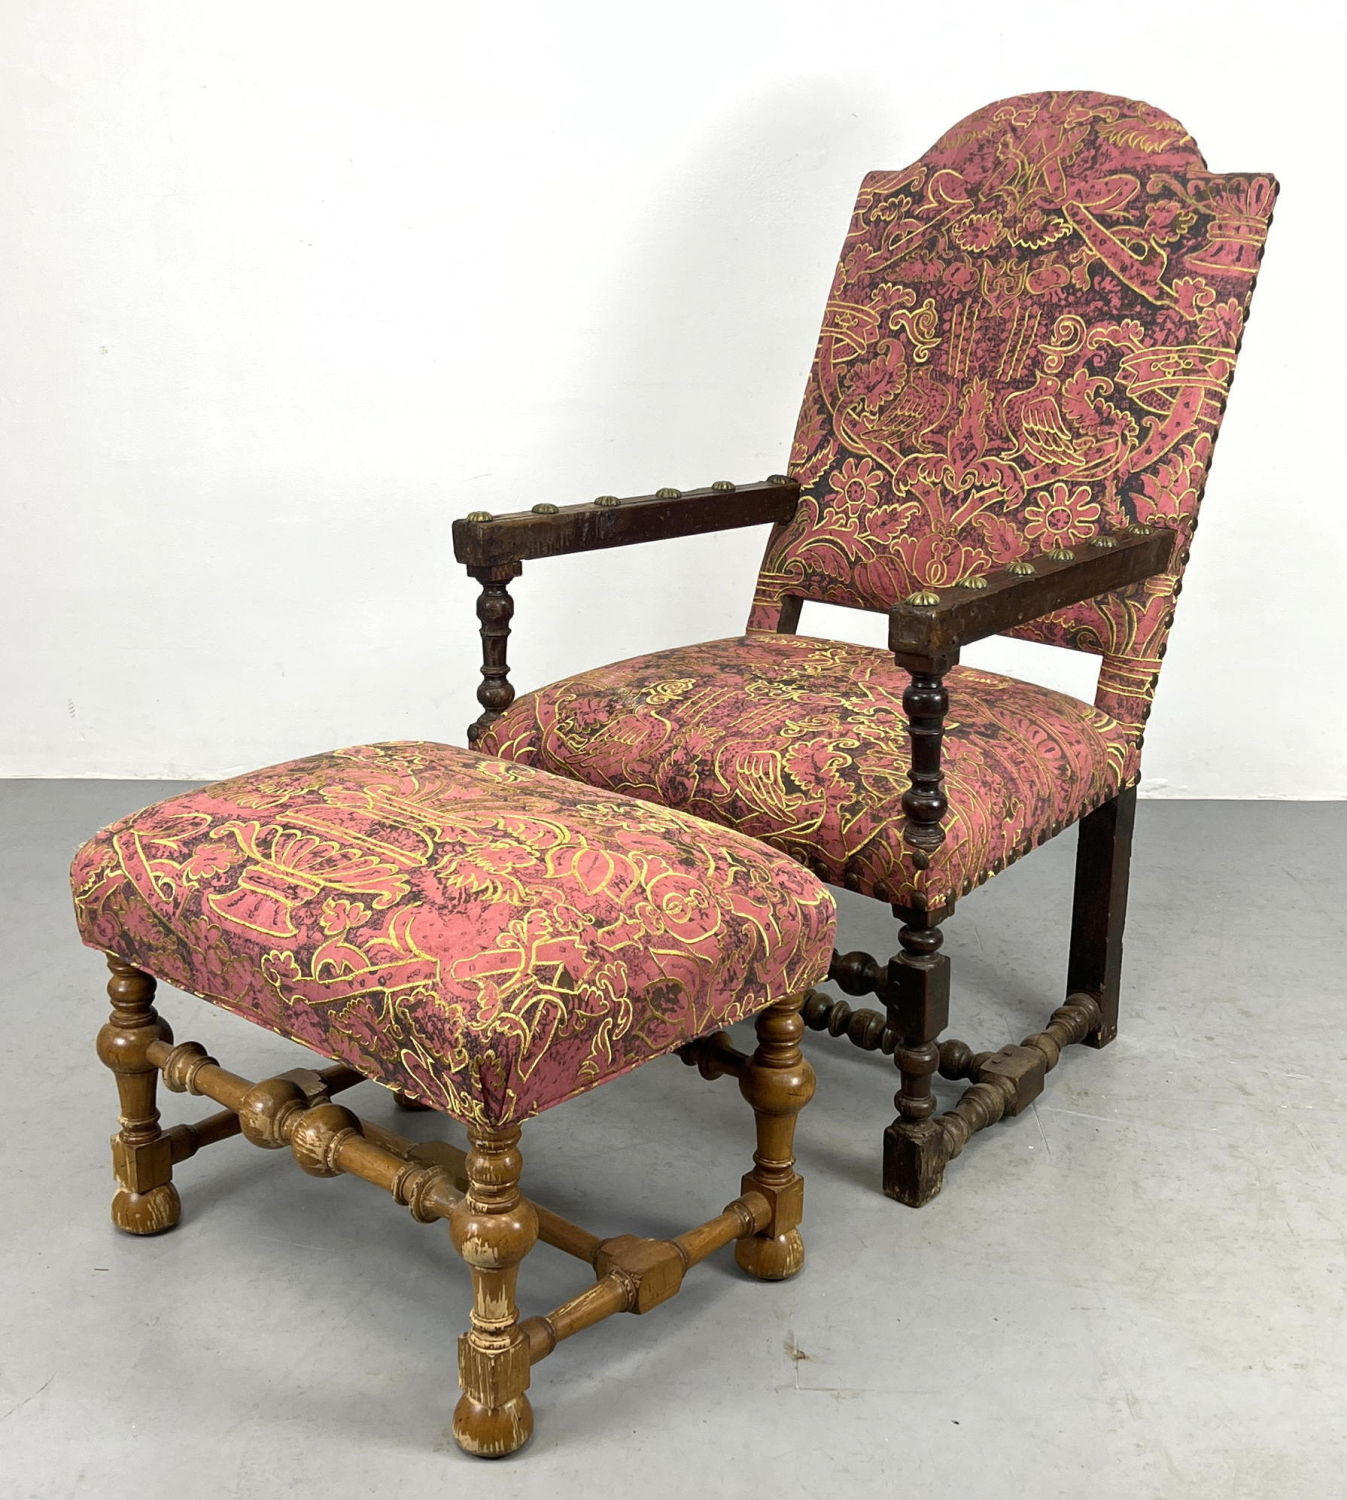 Jacobean Style armchair and Ottoman.